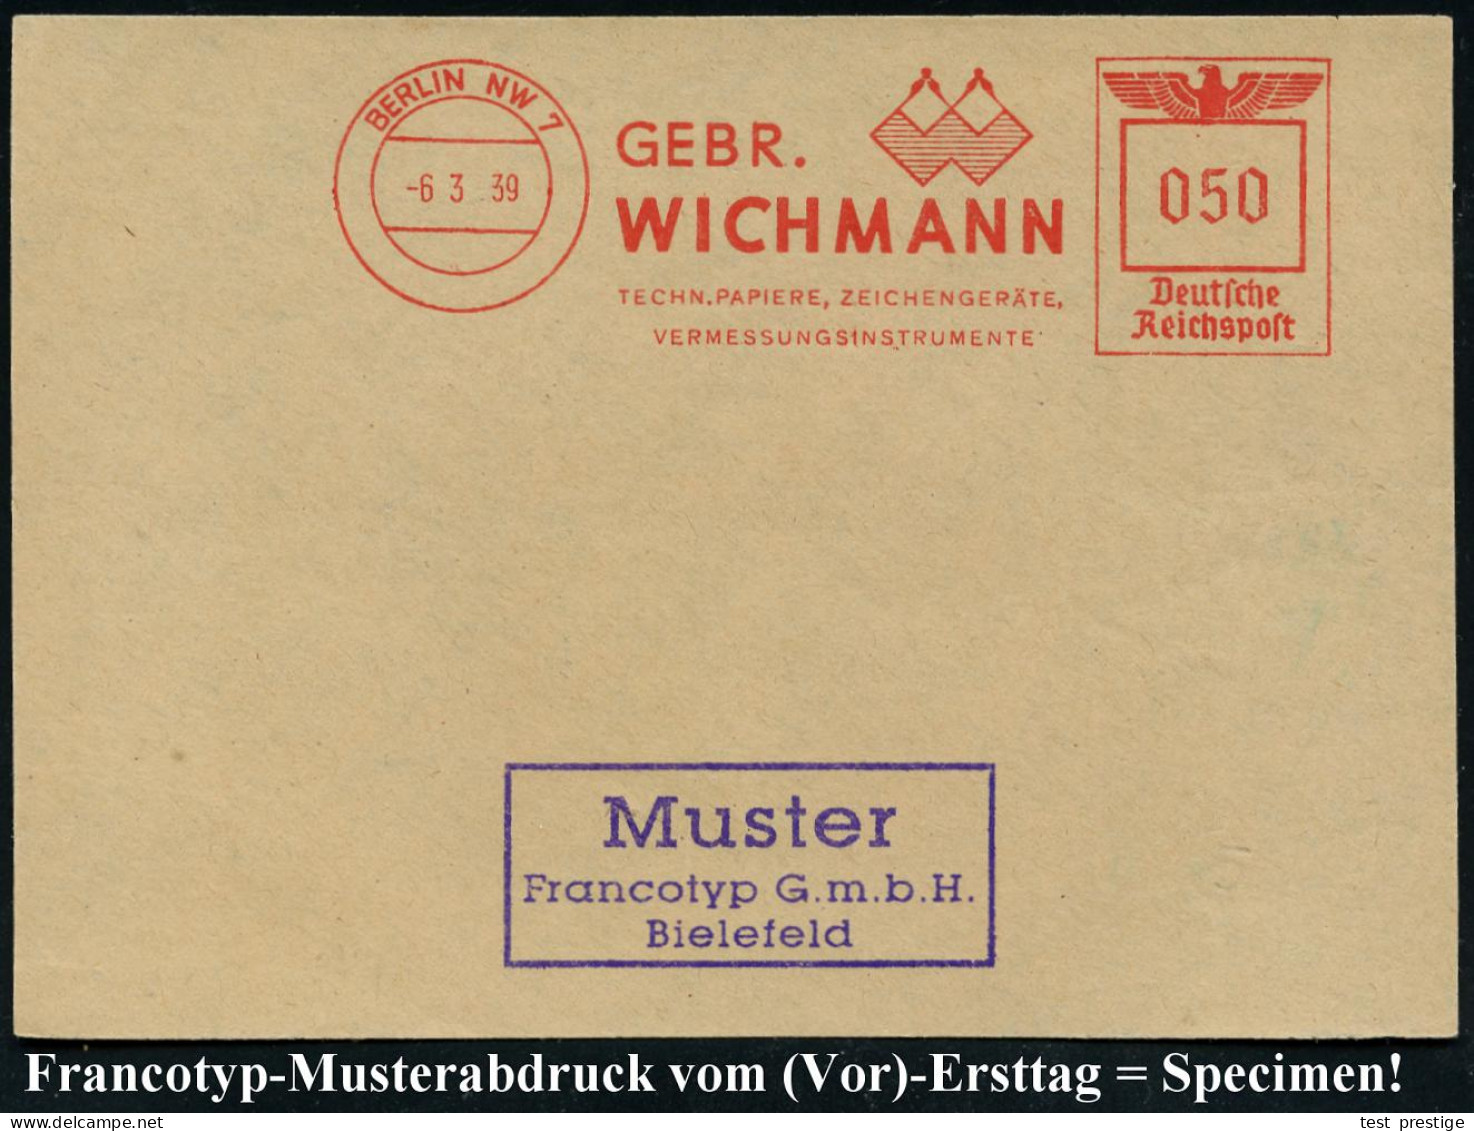 BERLIN NW7/ GEBR./ WICHMANN/ TECHN.PAPIERE, ZEICHENGERÄTE/ VERMESSUNGSINSTRUMENTE 1939 (6.3.) AFS-Musterabdruck Francoty - Geographie